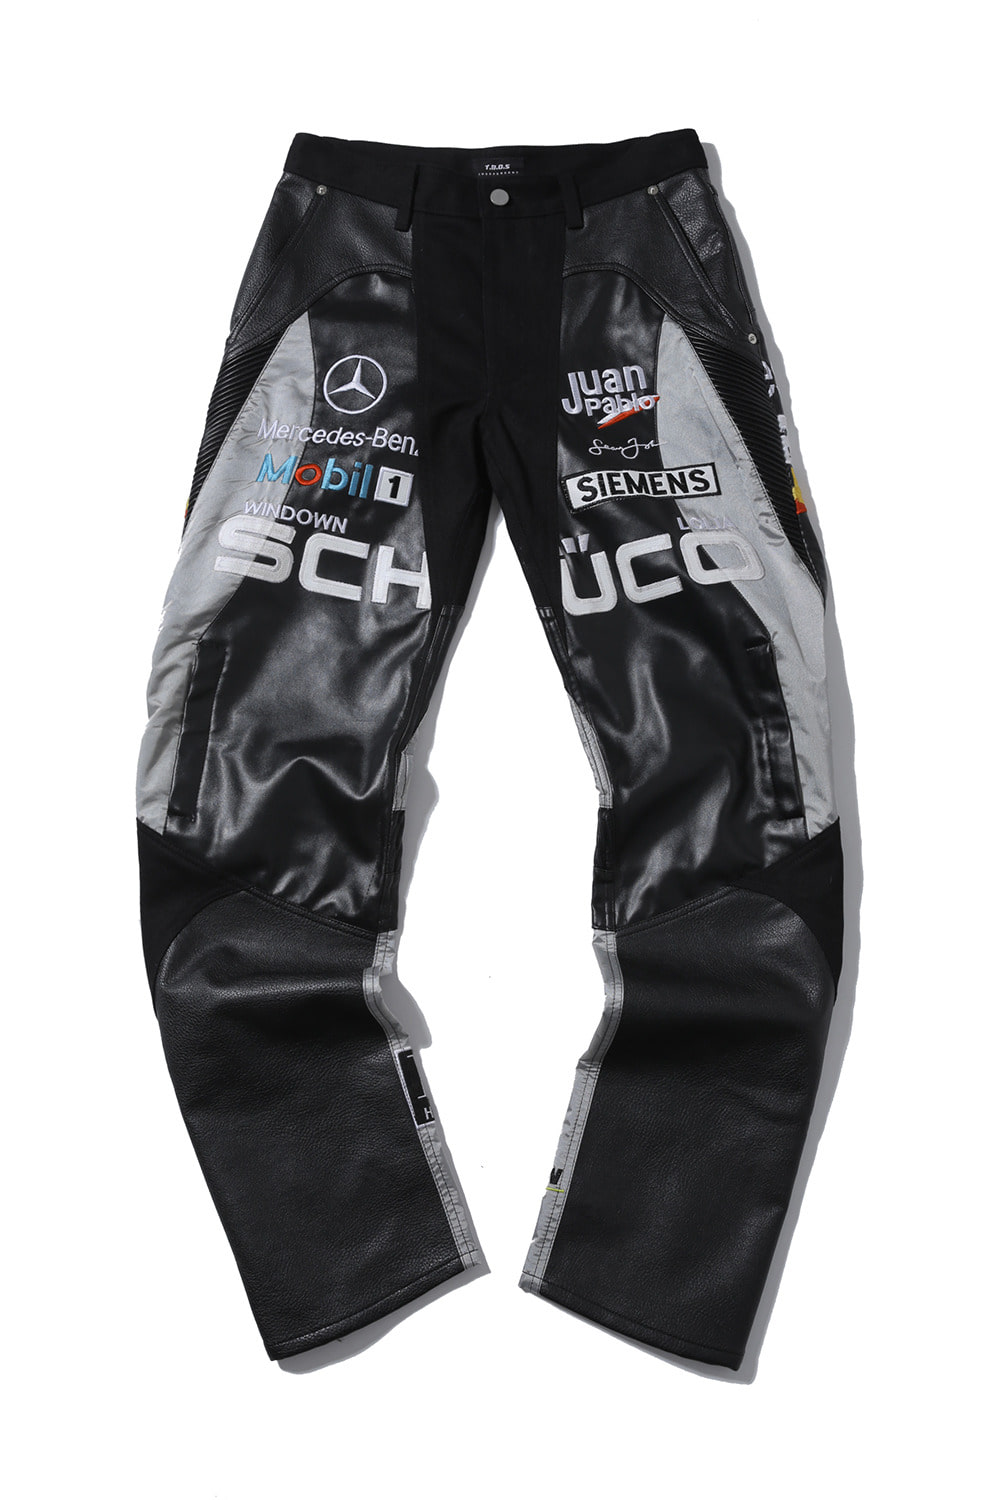 Schuco racing detail pants